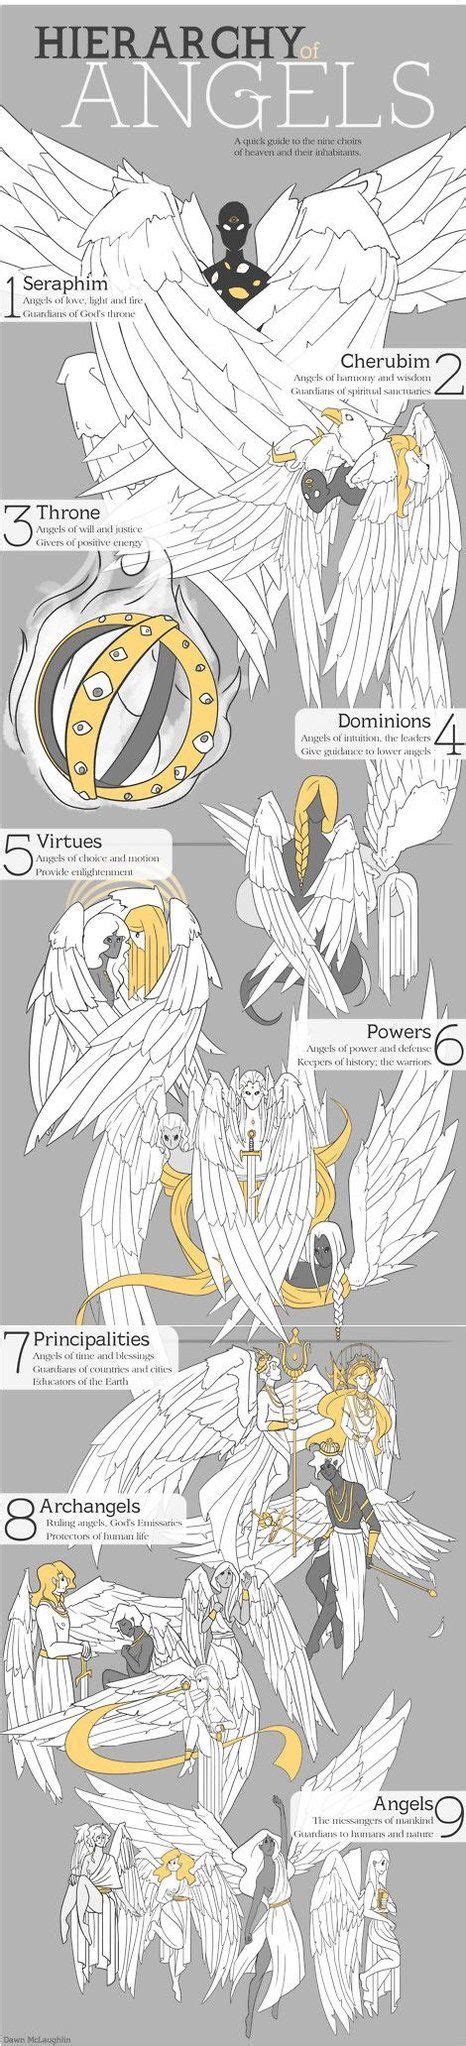 Hierarchy Of Angels Demon Hierarchy Angel Hierarchy M